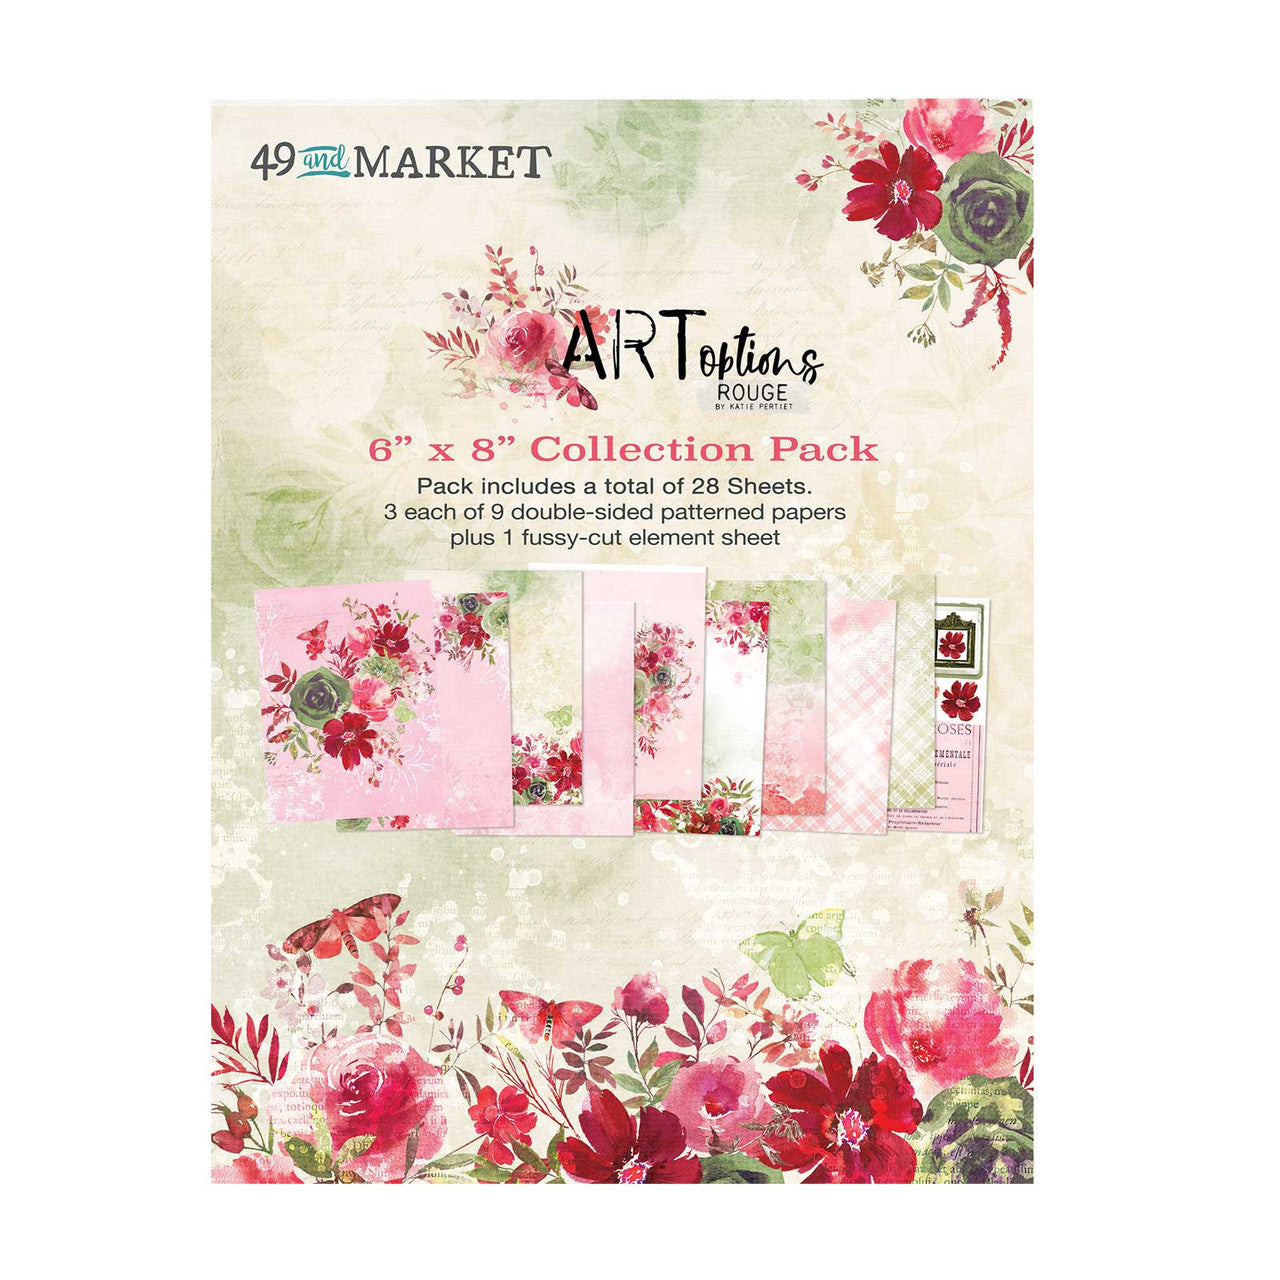 Paquete de colección 49 y Market ARToptions Rouge 6 x 8